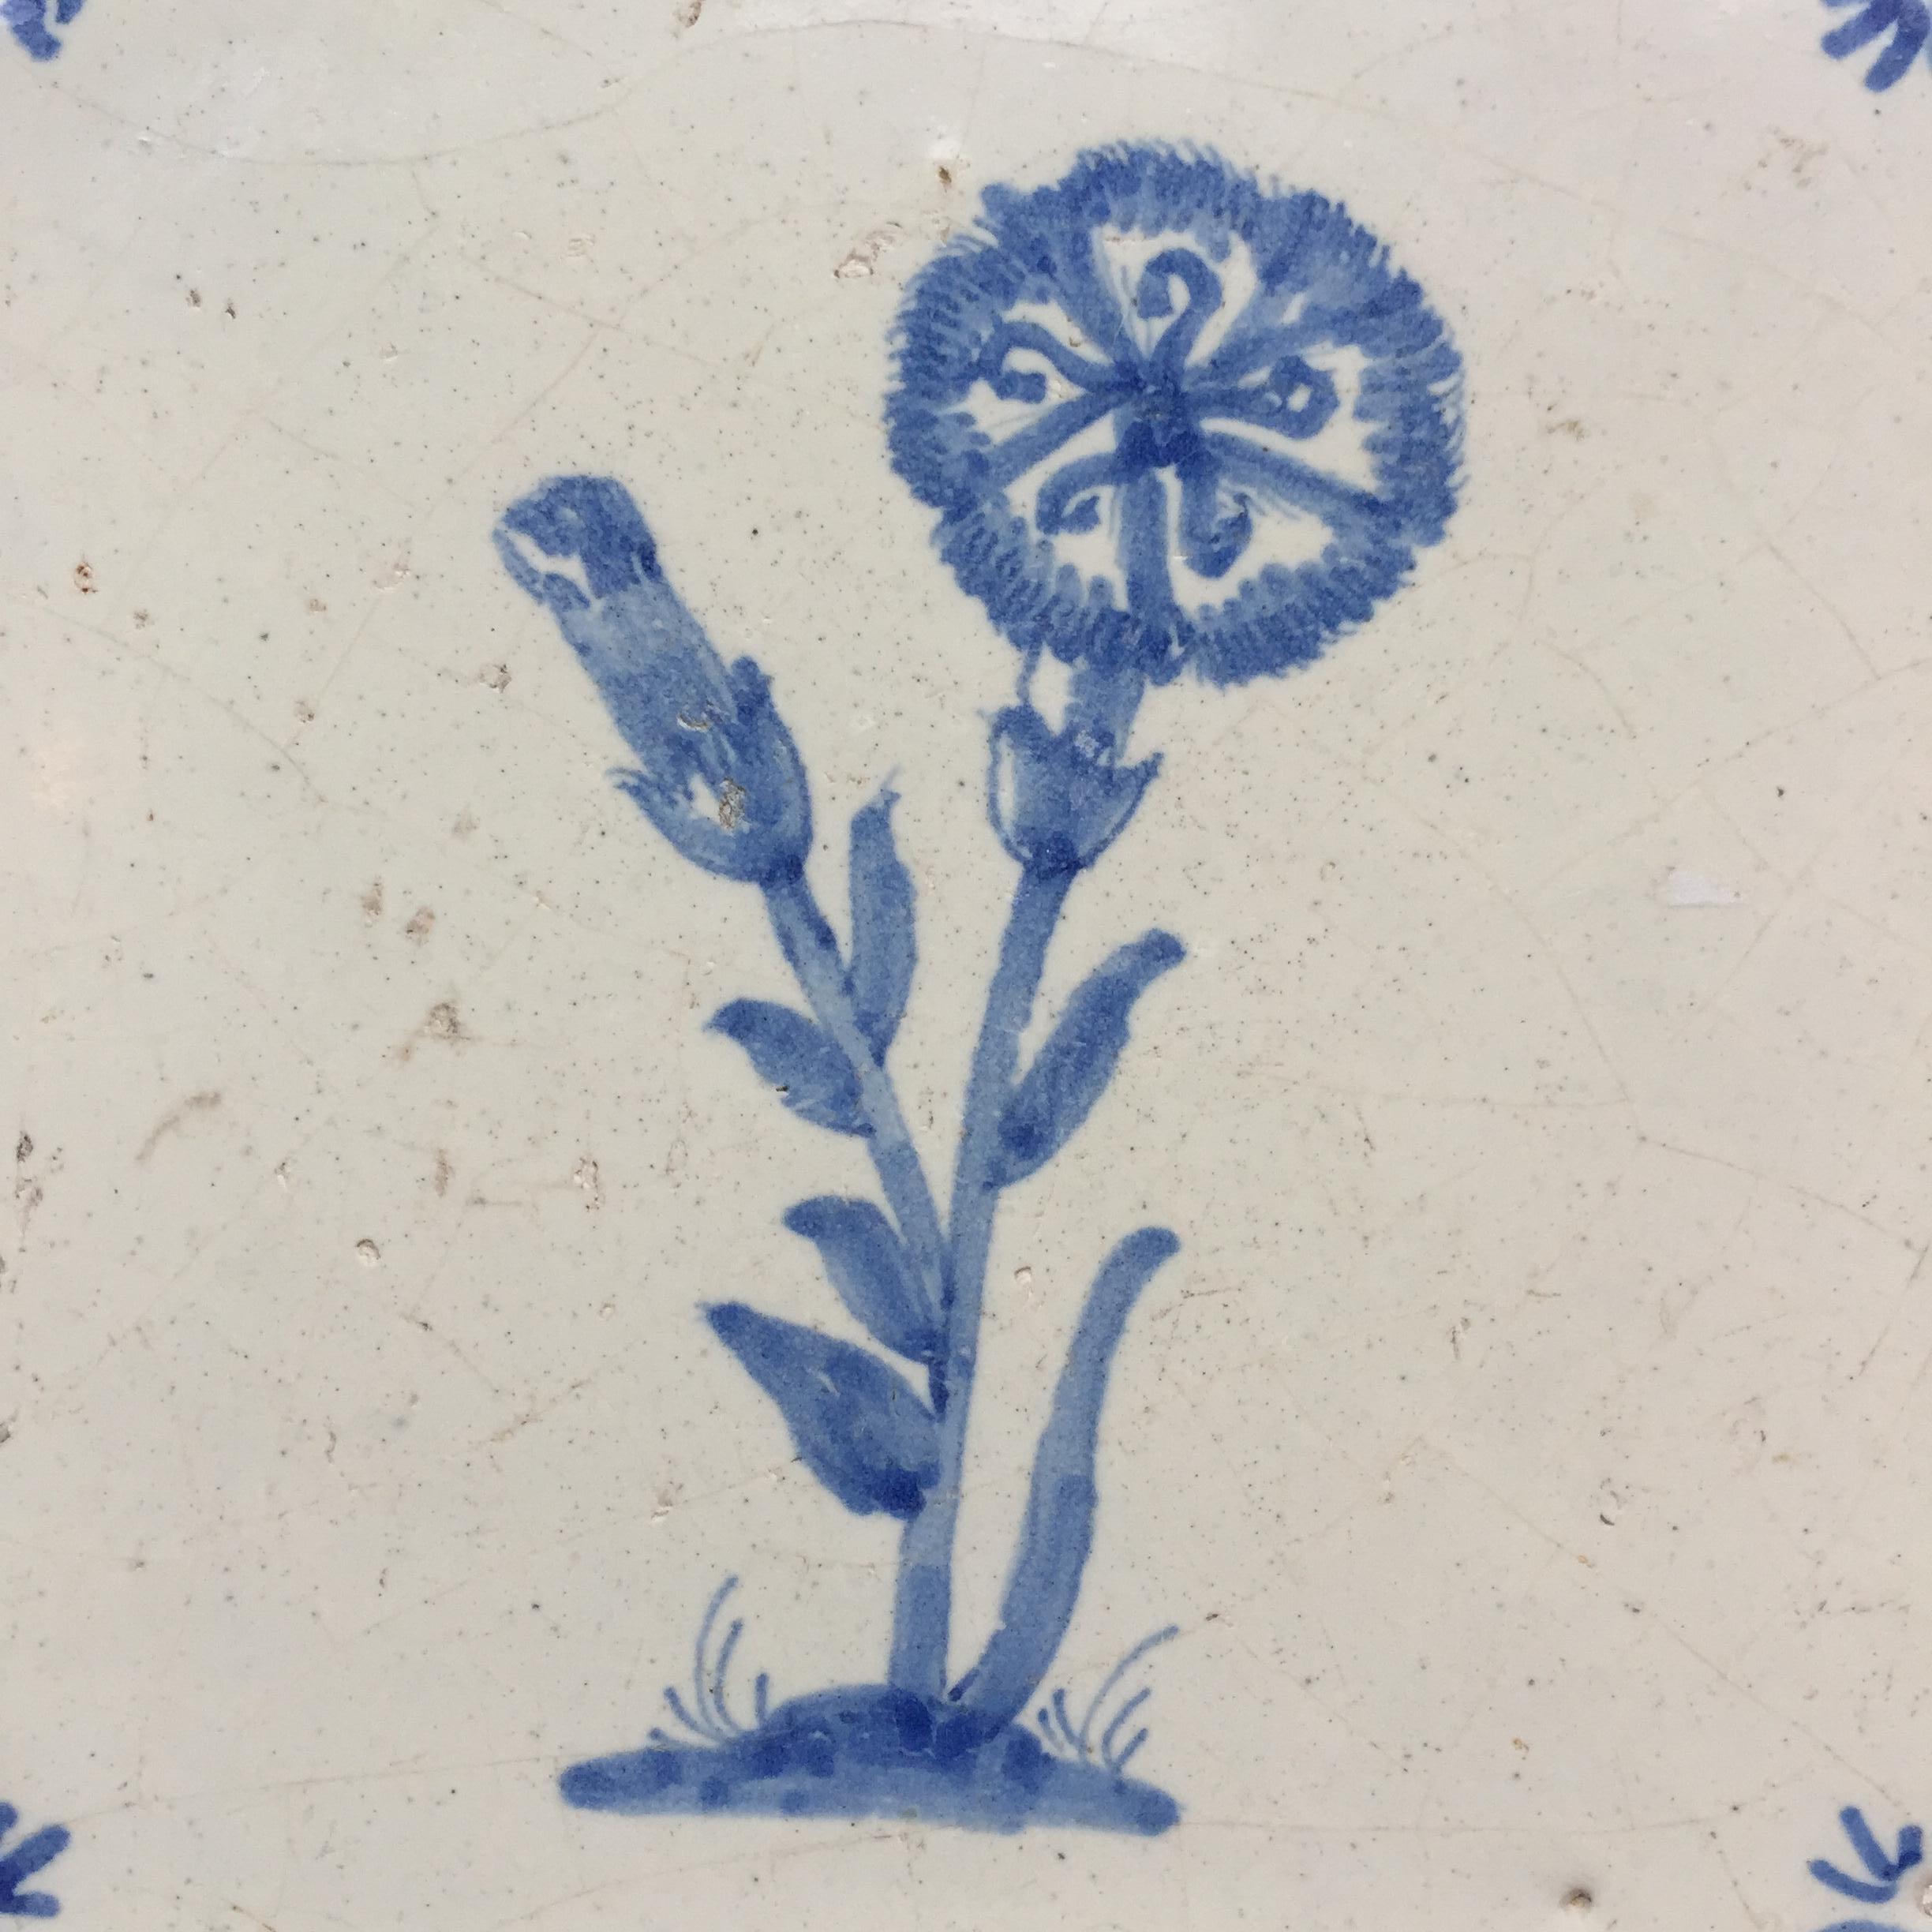 Les Pays-Bas
Vers 1660 - 1680

Un carreau hollandais bleu et blanc à la décoration de deux œillets. L'un en bouton et l'autre en fleur.
Avec de petites têtes de bœuf en guise de décoration d'angle.

Le carreau est en très bon état, avec l'usure